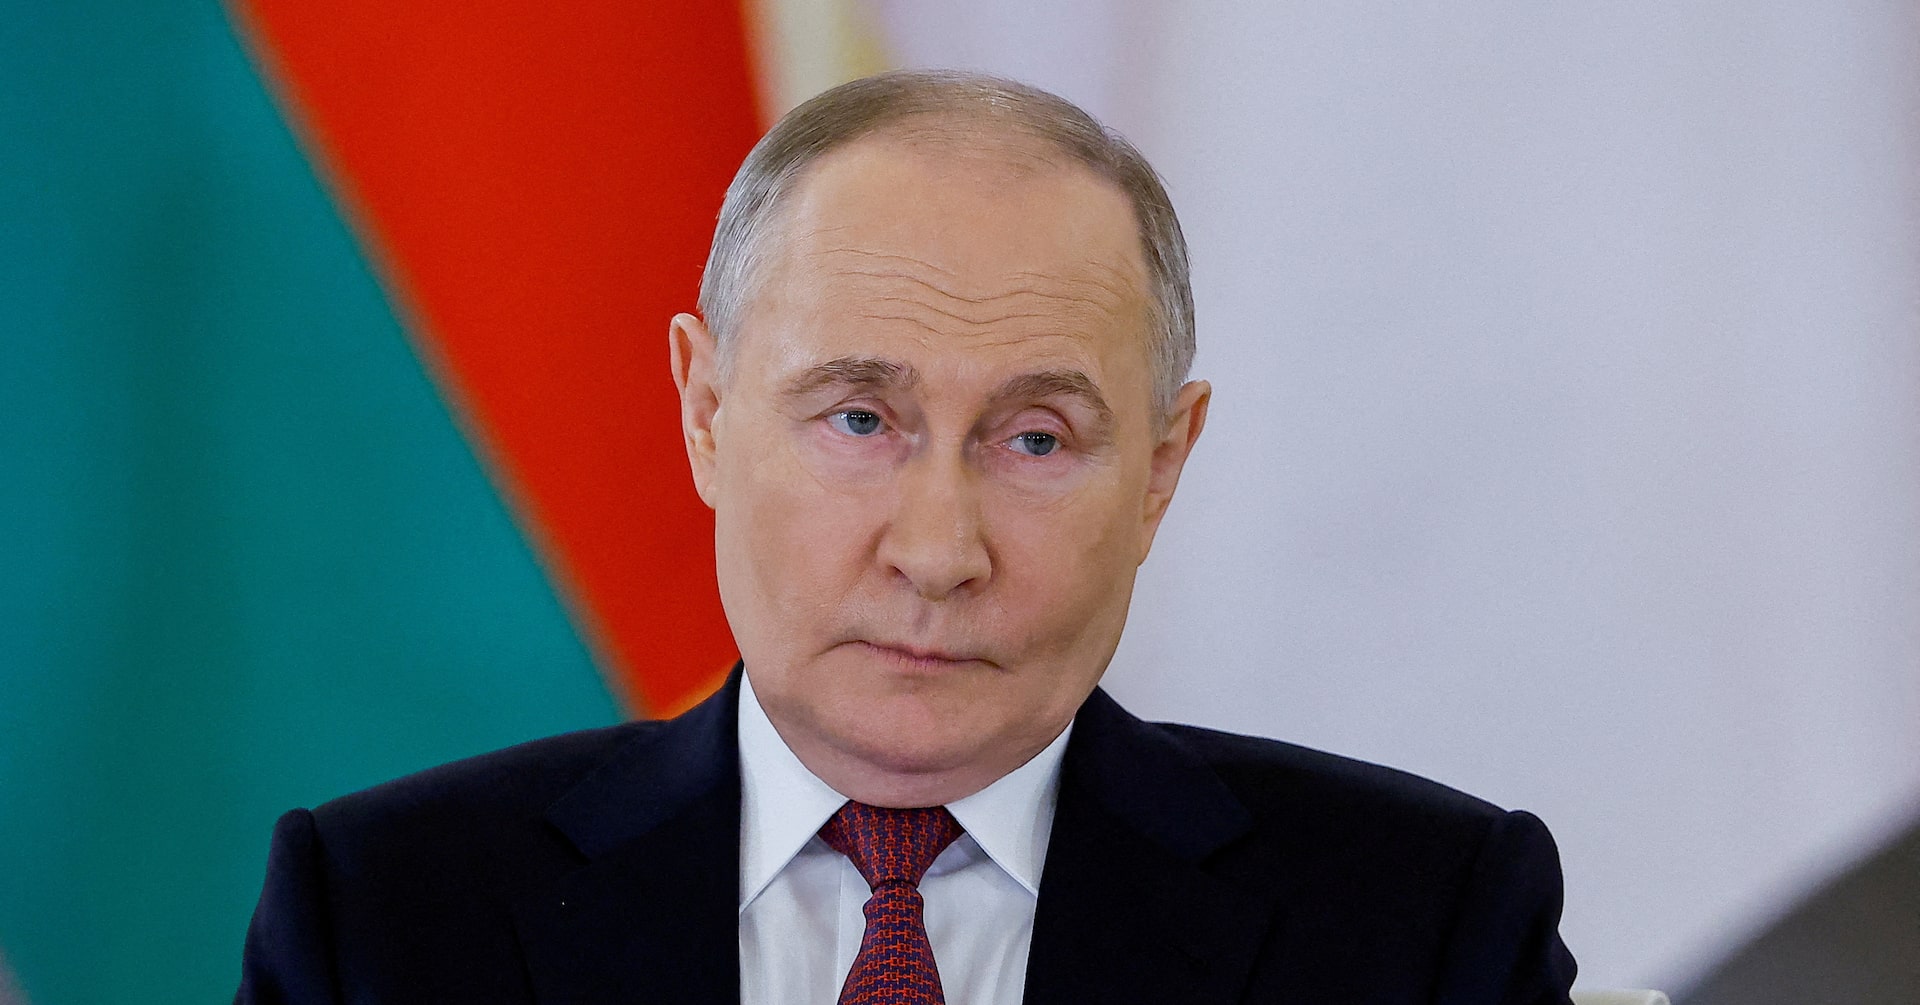 プーチン氏、中国和平案を支持 ウクライナ戦争の「背景を理解」